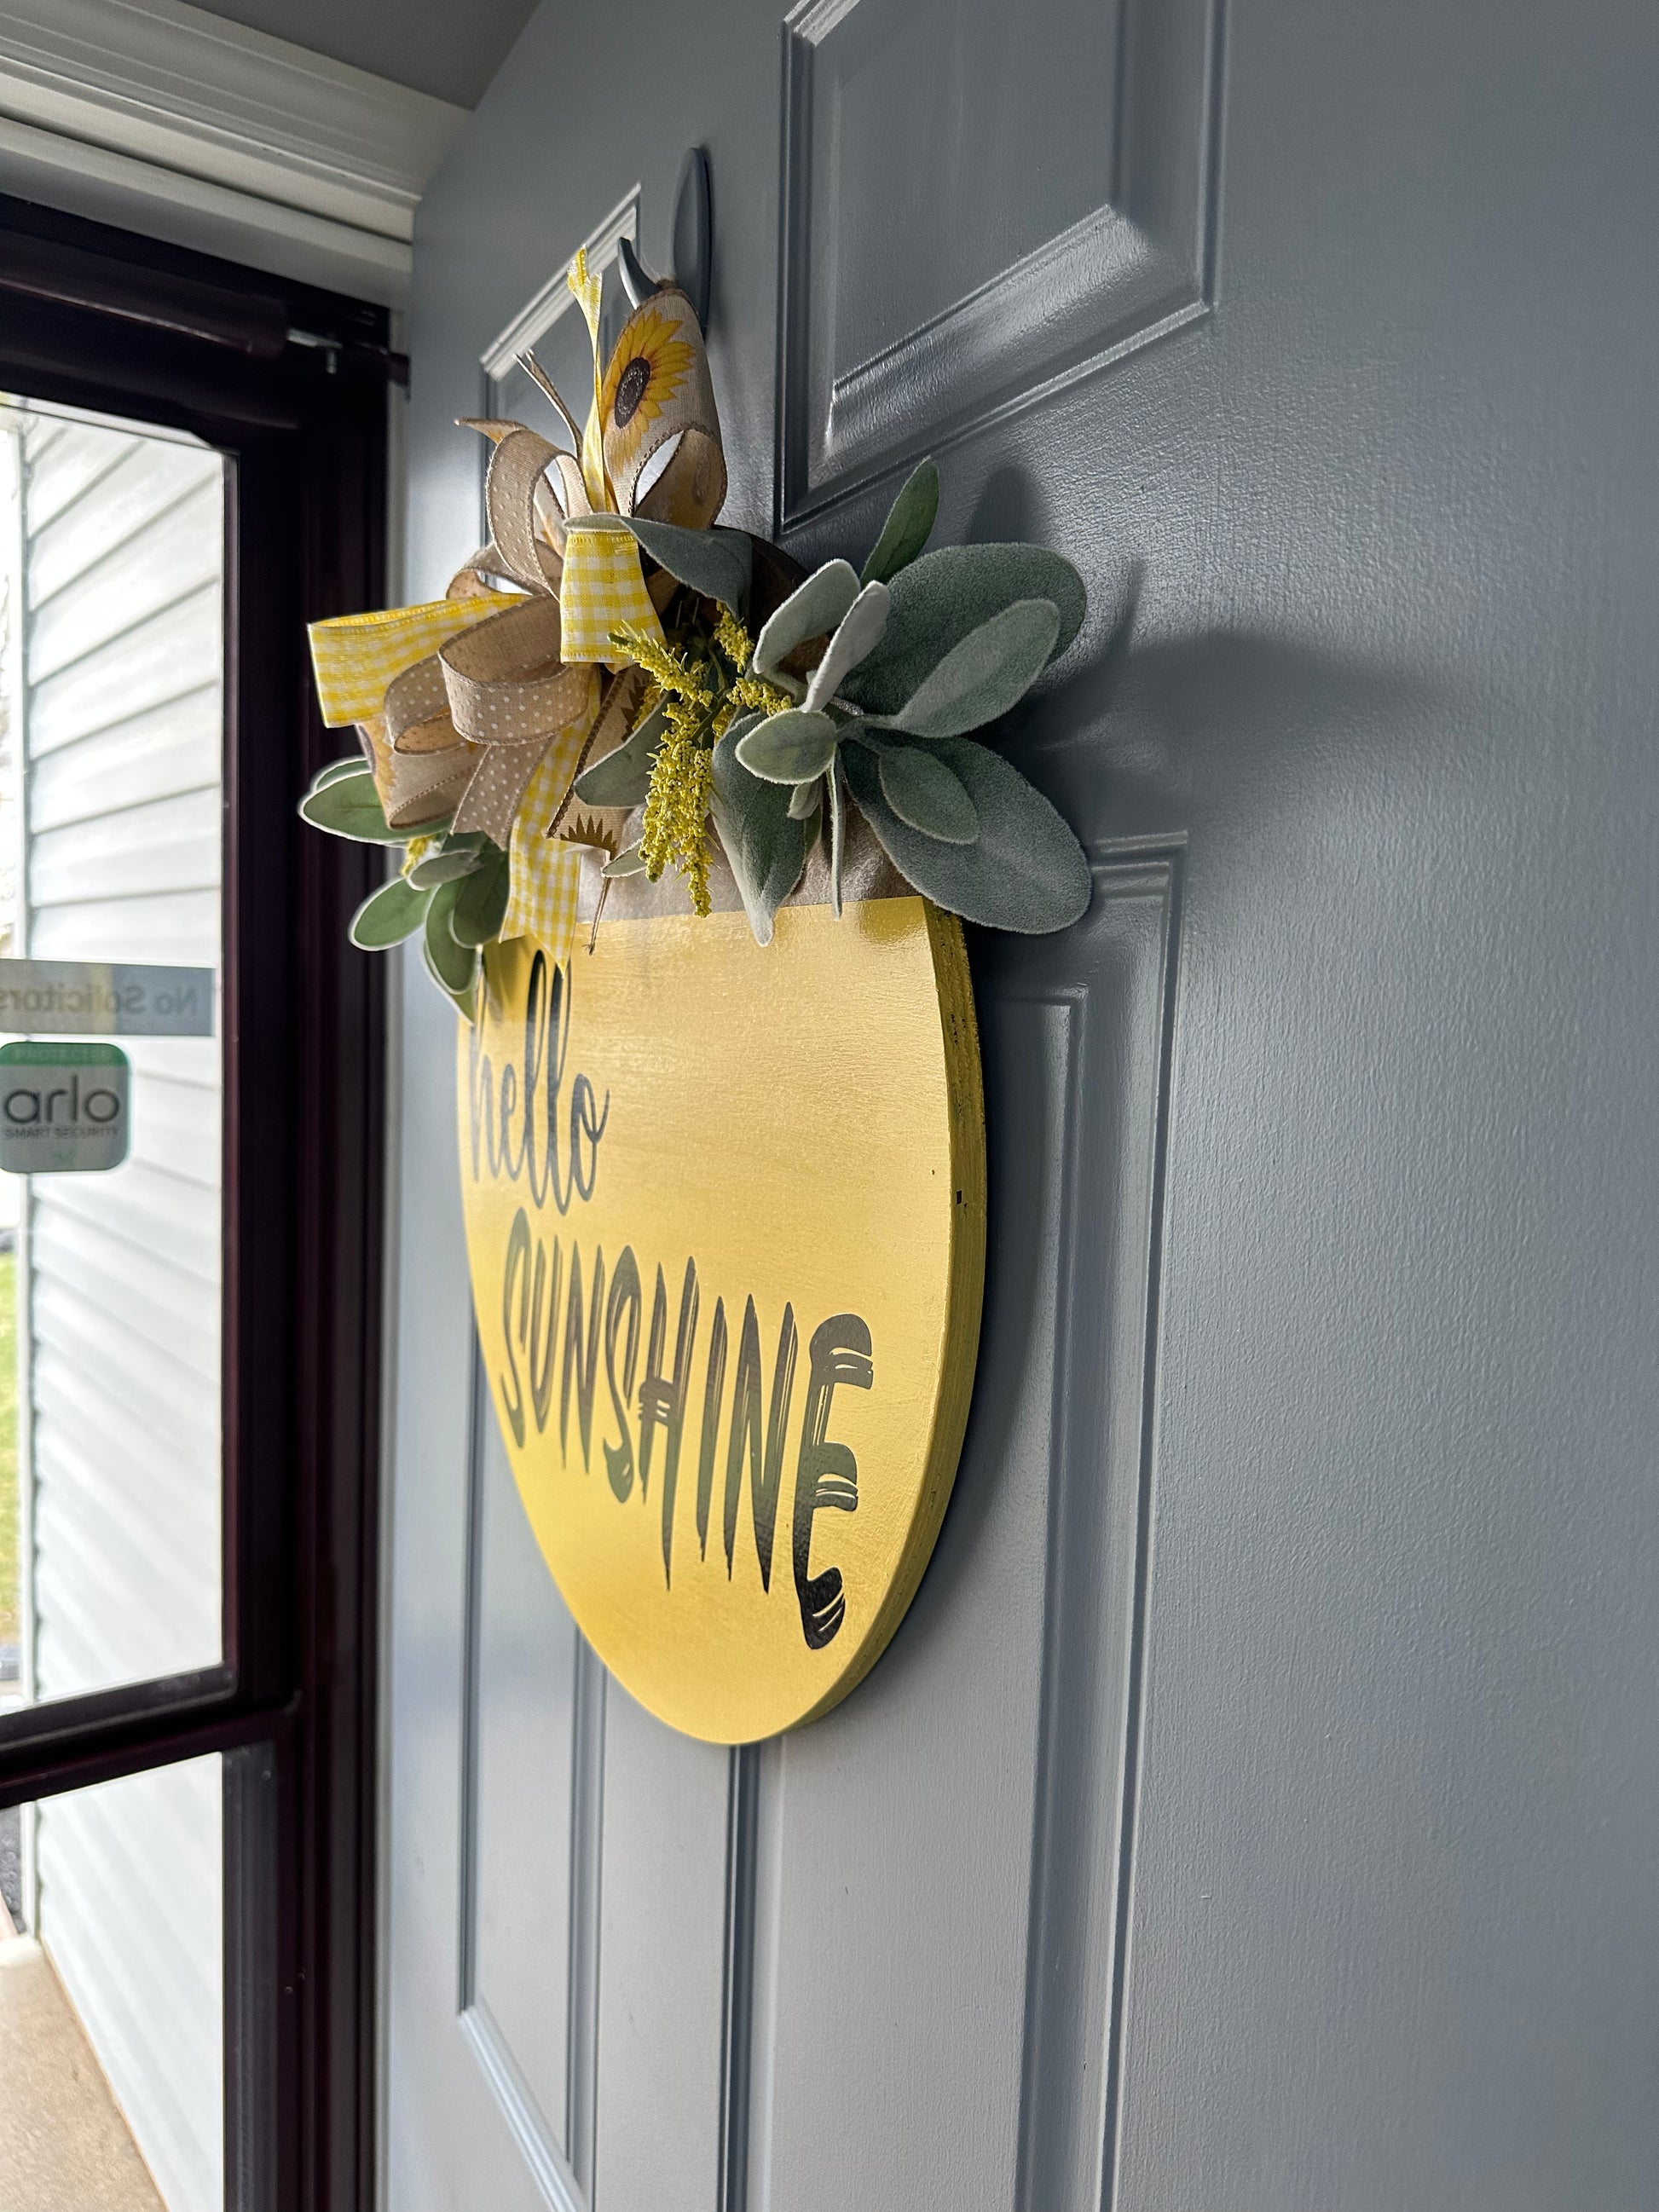 Hello Sunshine Door Hanger - Willow Love Bug Designs 